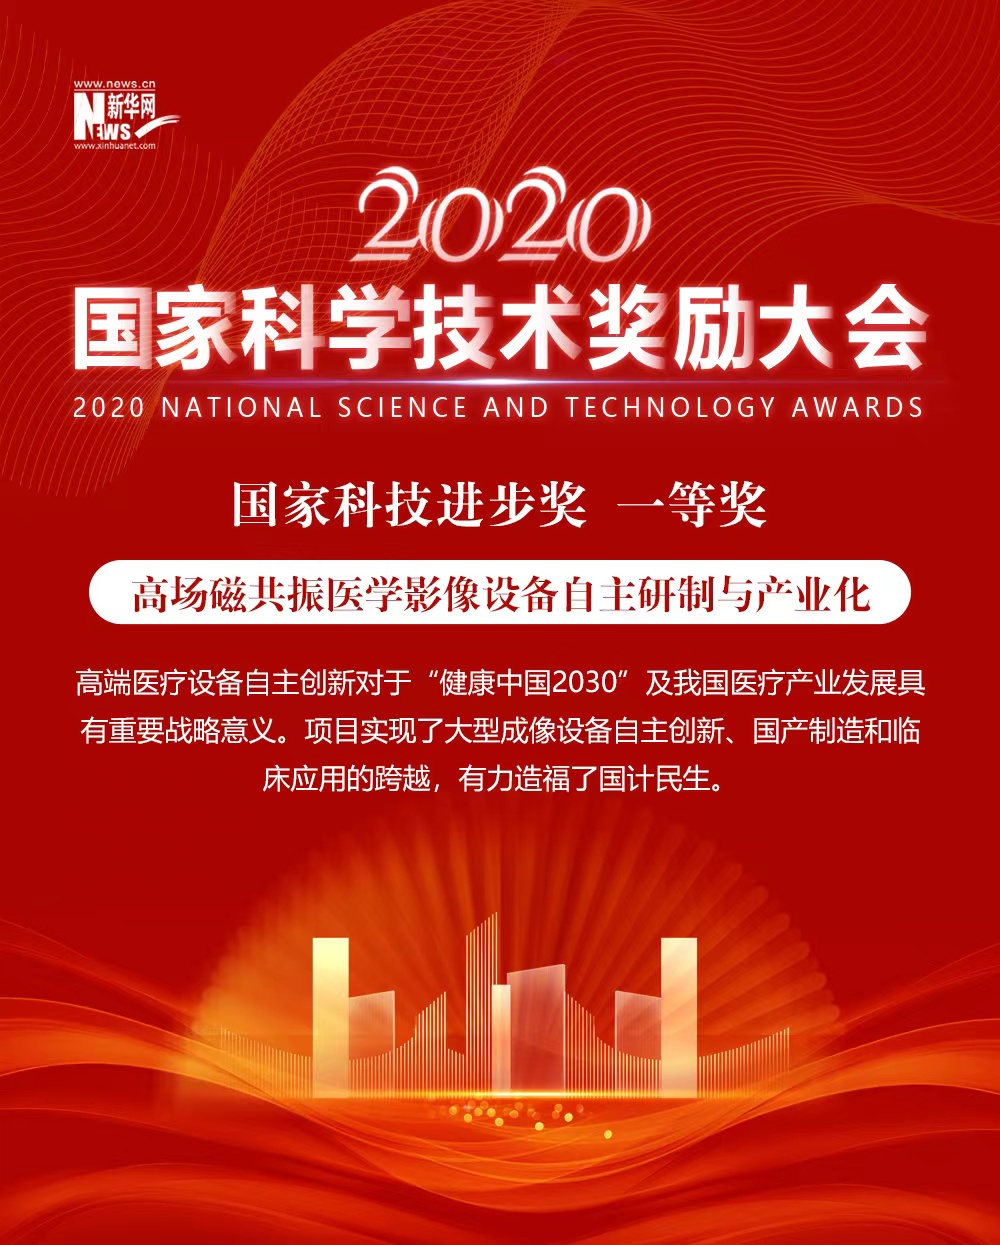 2020年度国家科技奖获奖项目巡礼